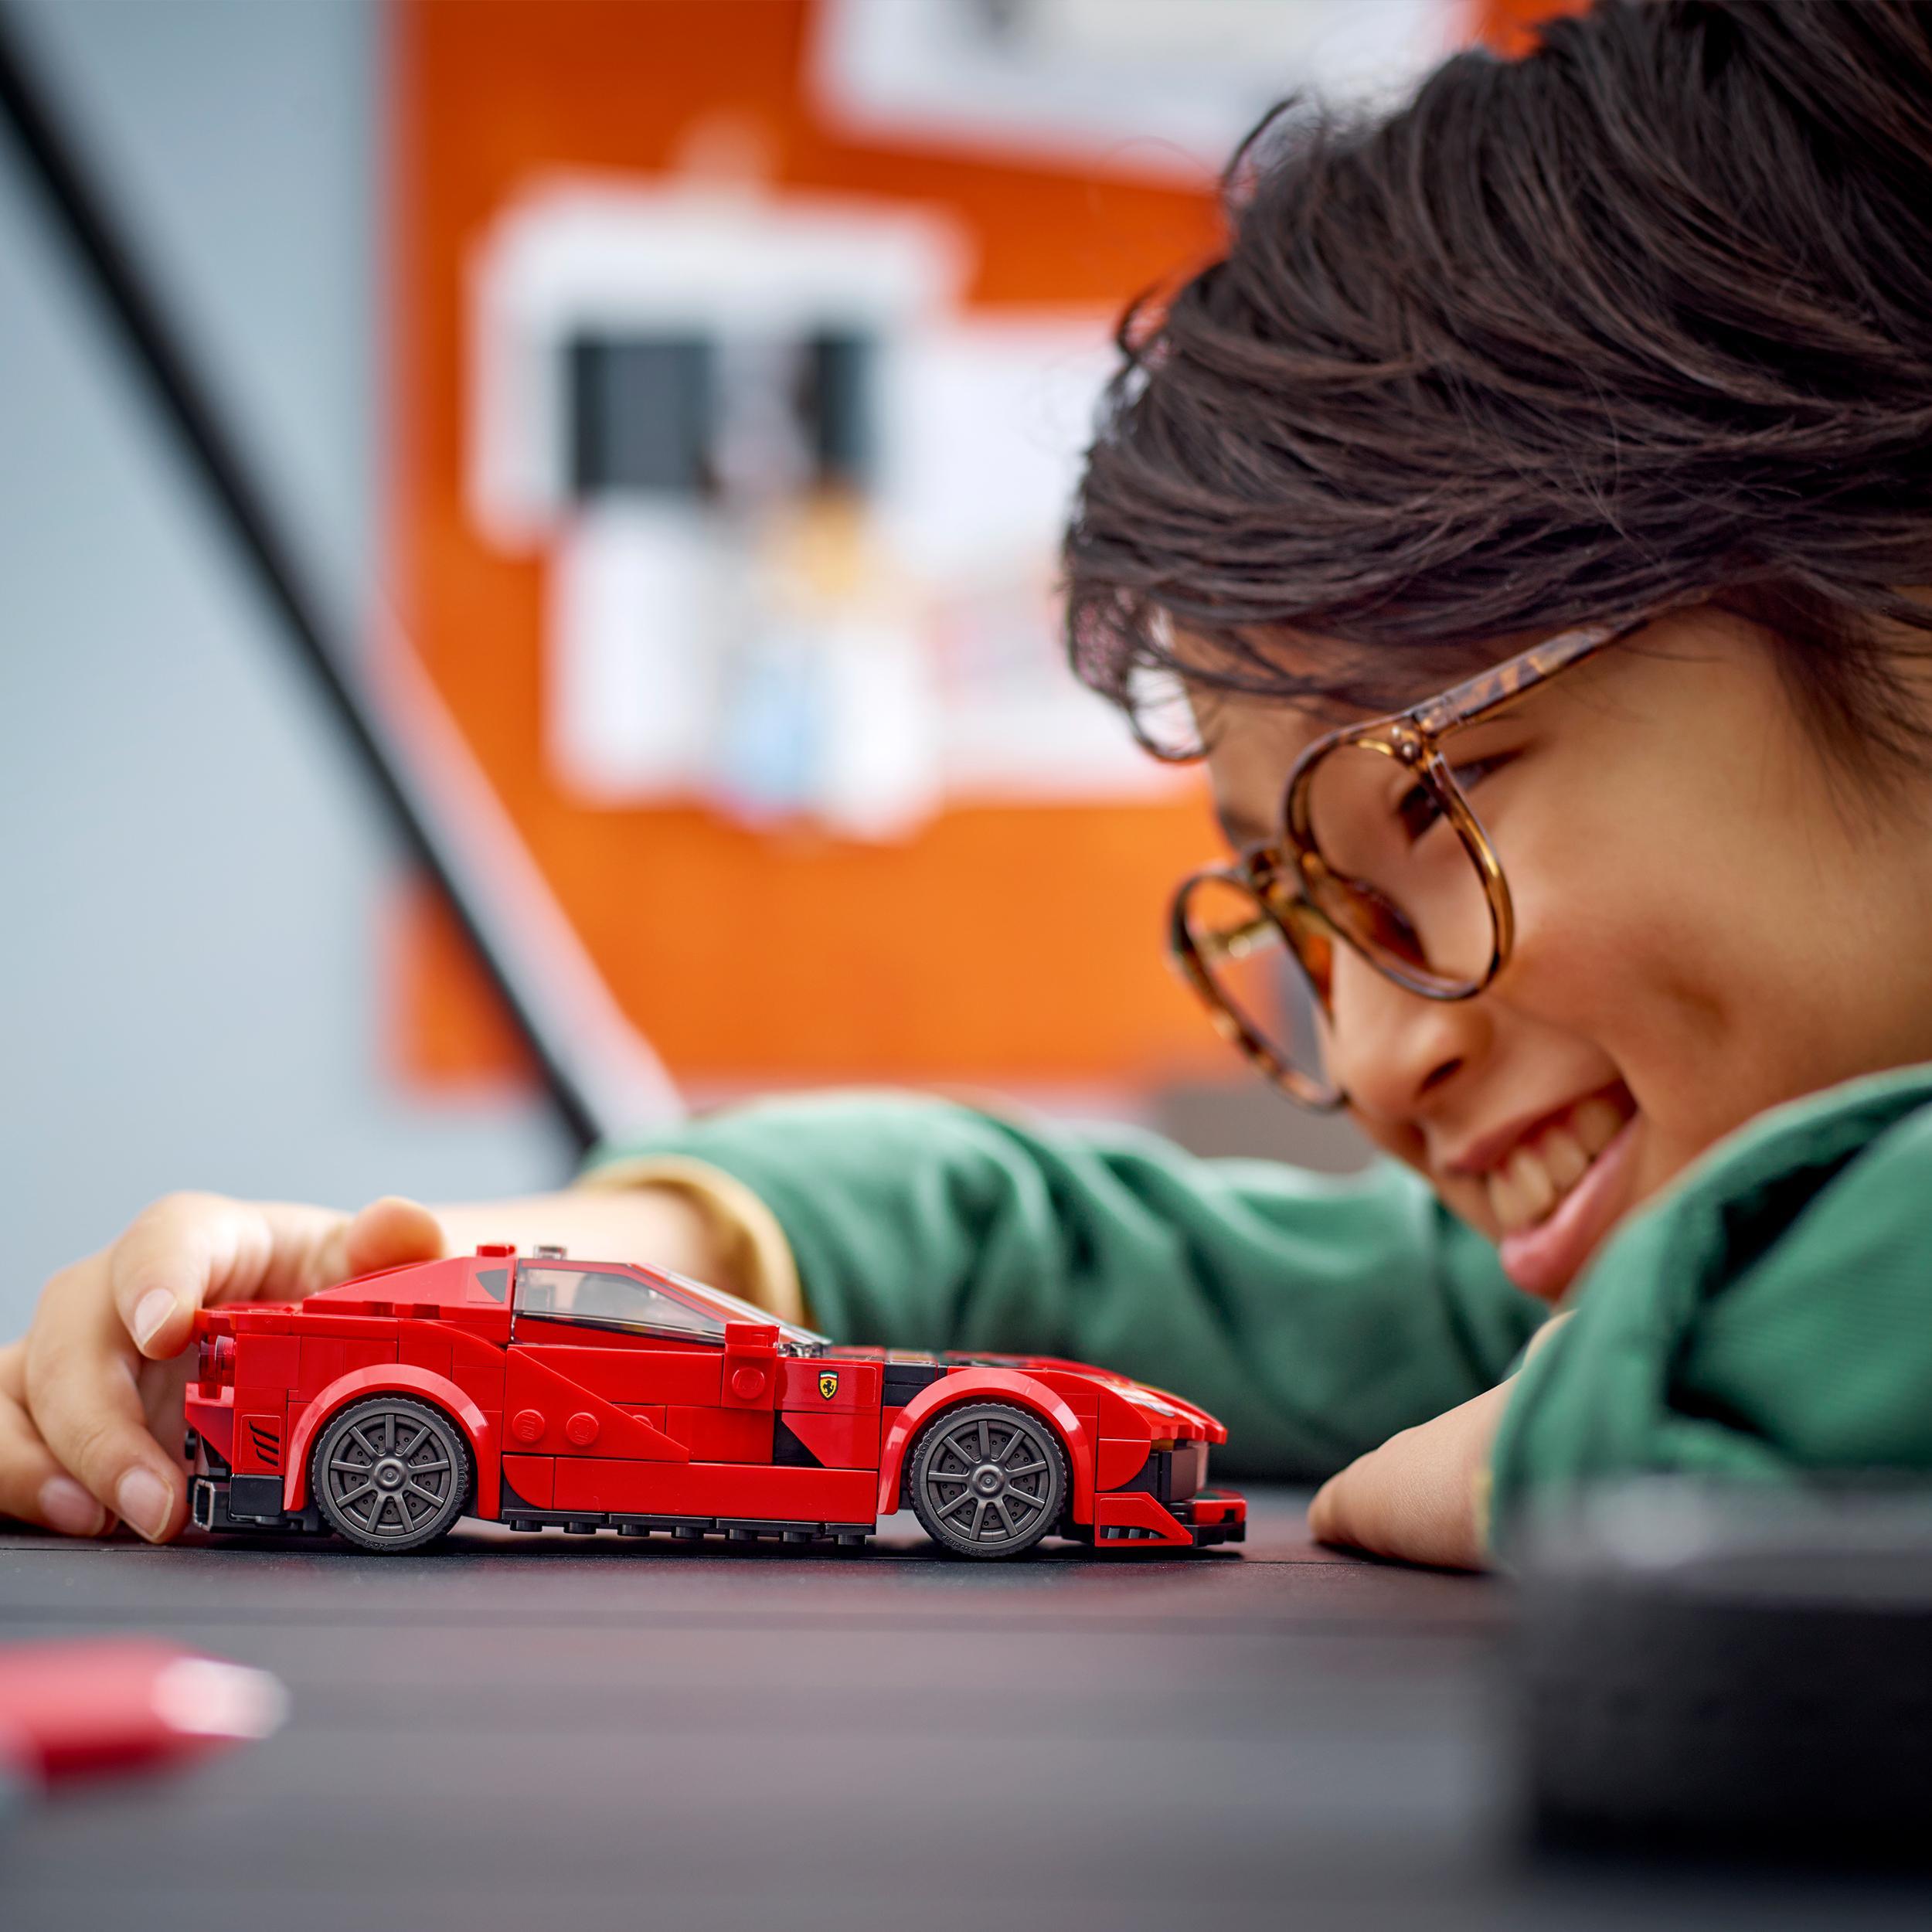 LEGO Speed Champions 76914 Ferrari 812 Competizione, Modellino Auto da collezione - LEGO